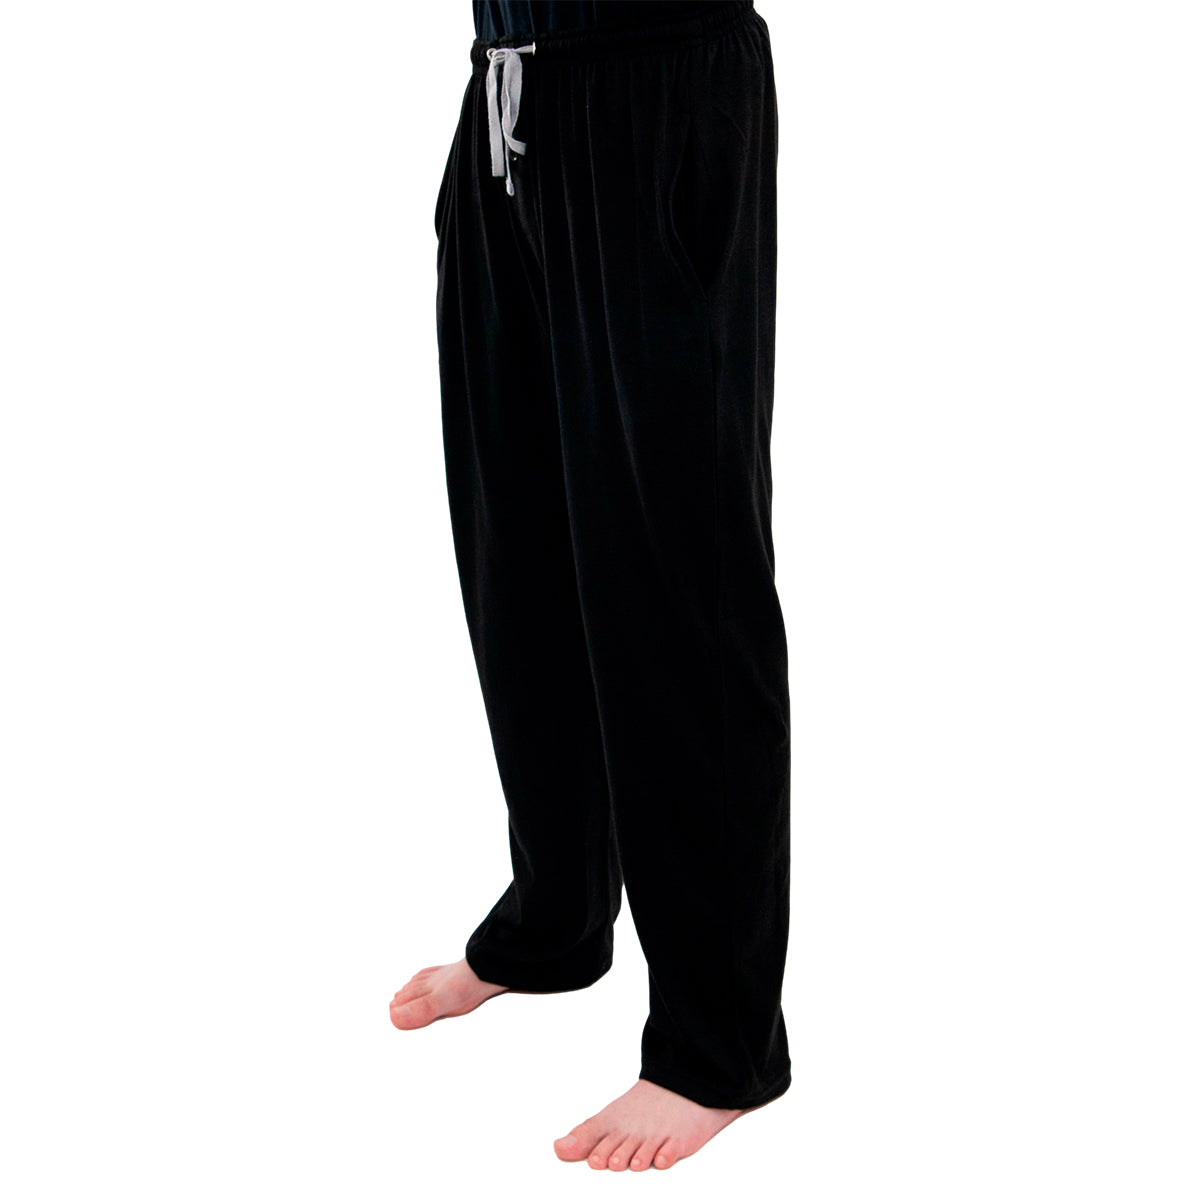 Tru Fit Men's Cotton Knit Lounge Pajama Pants – Fly & Pockets